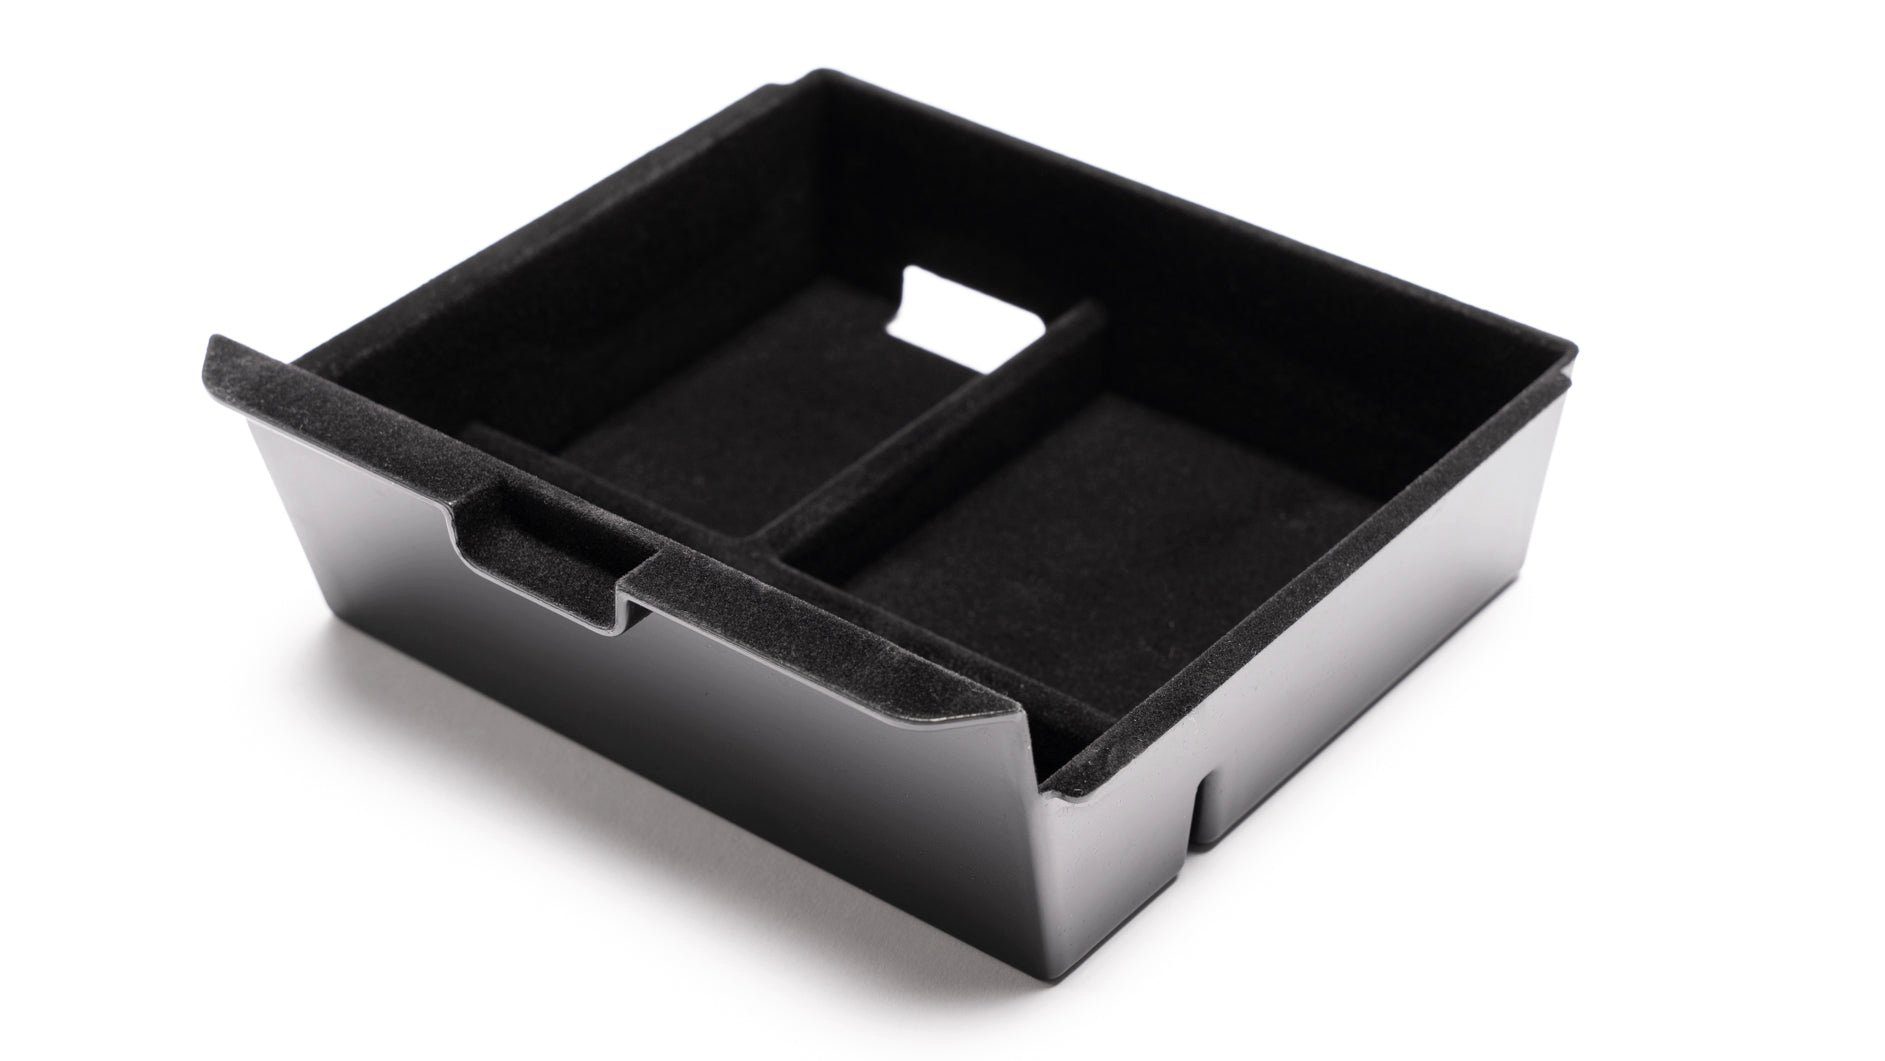 https://i.otto.de/i/otto/d0eba795-add9-5e53-92c6-645cdf1ab2f5/shop4ev-dekoablage-organizer-box-mittelkonsole-fuer-das-tesla-model-3.jpg?$formatz$